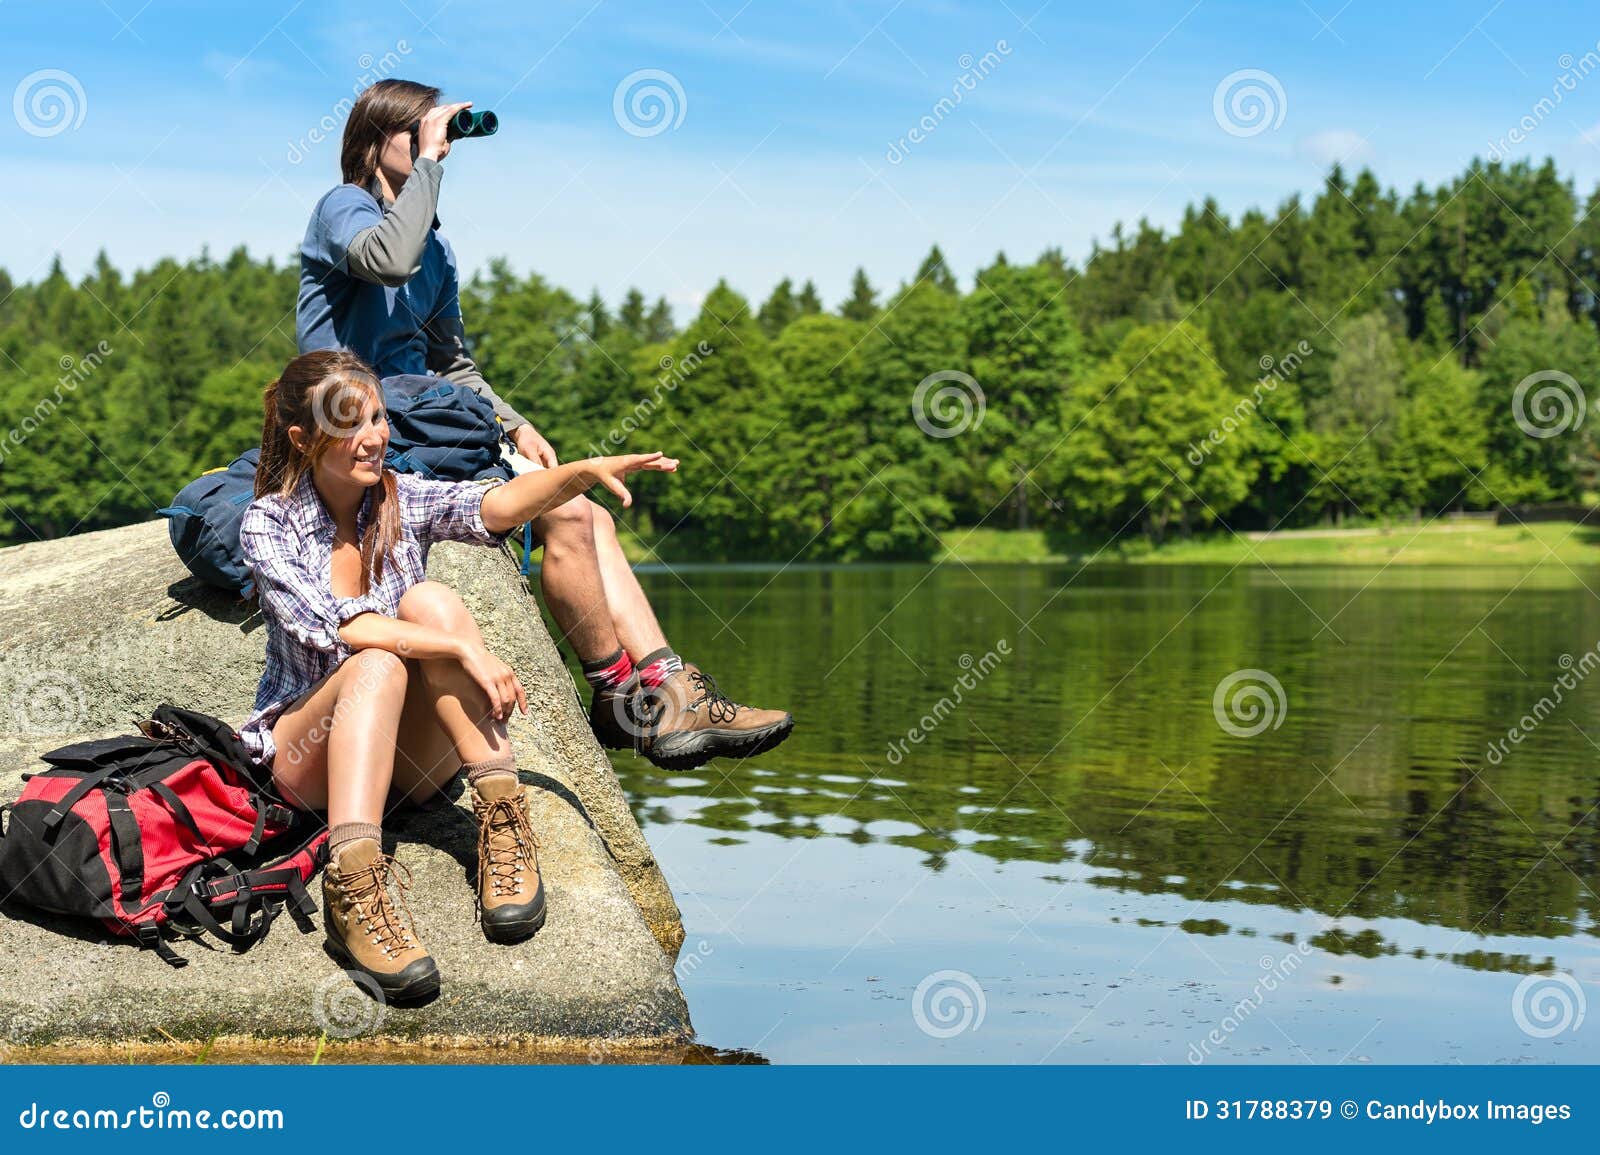 teenage hikers birdwatching at lake